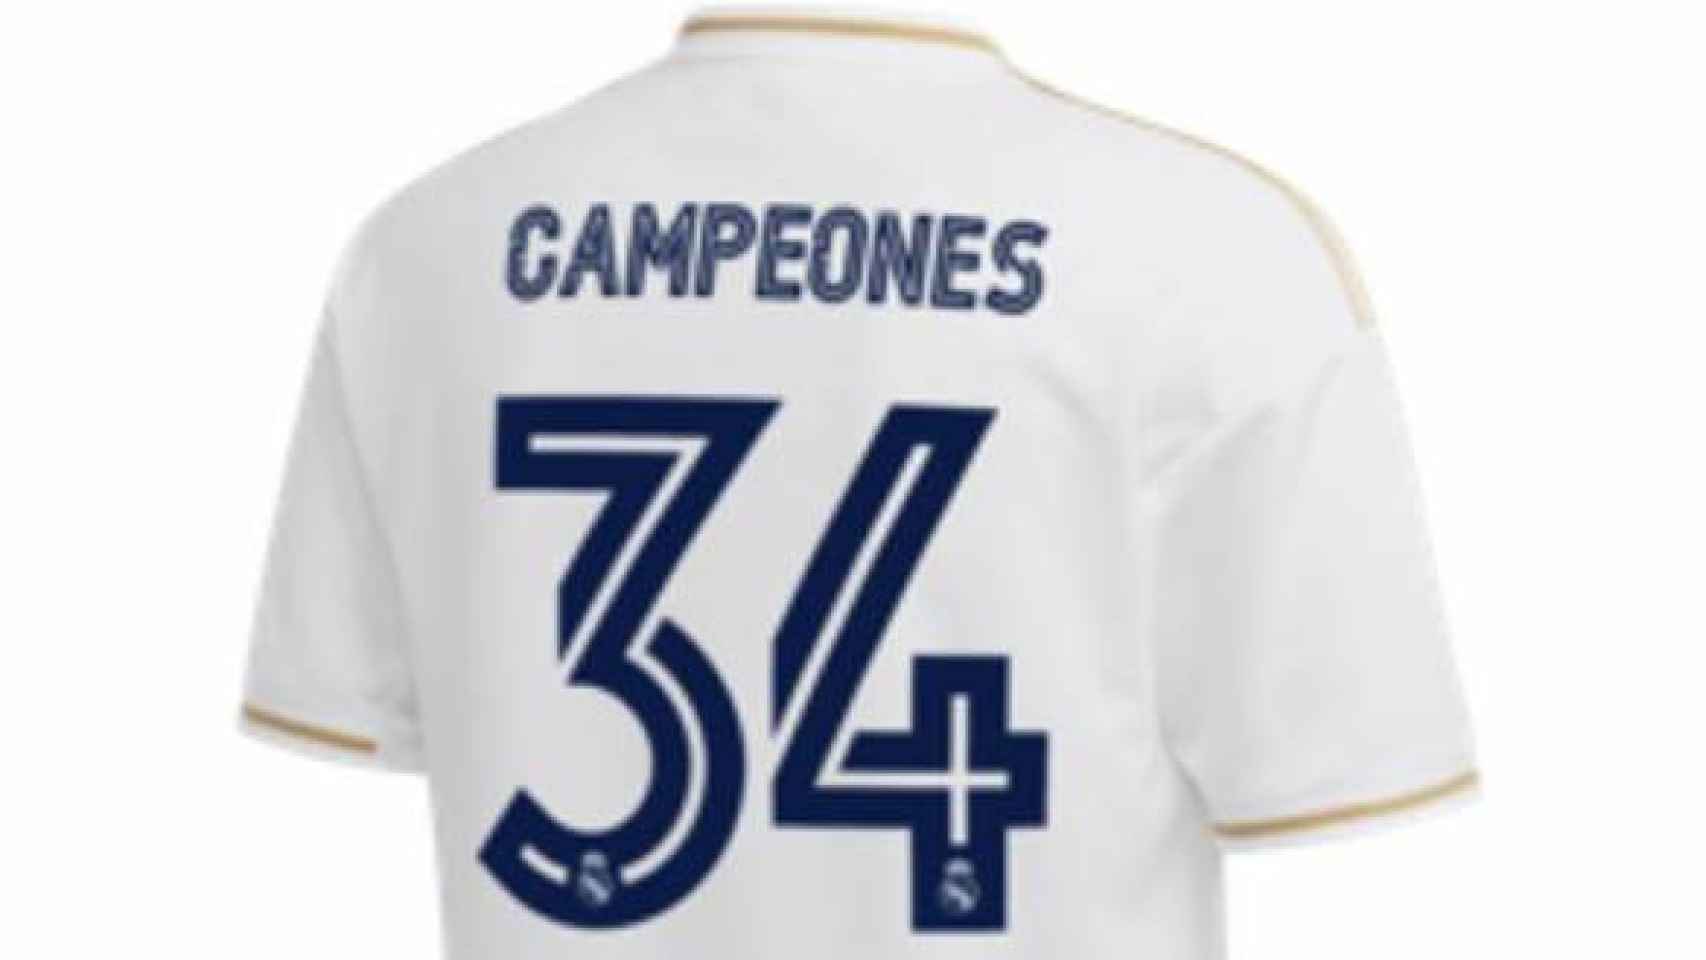 Así es la camiseta del Real Madrid conmemorativa por los campeones de la 34ª Liga